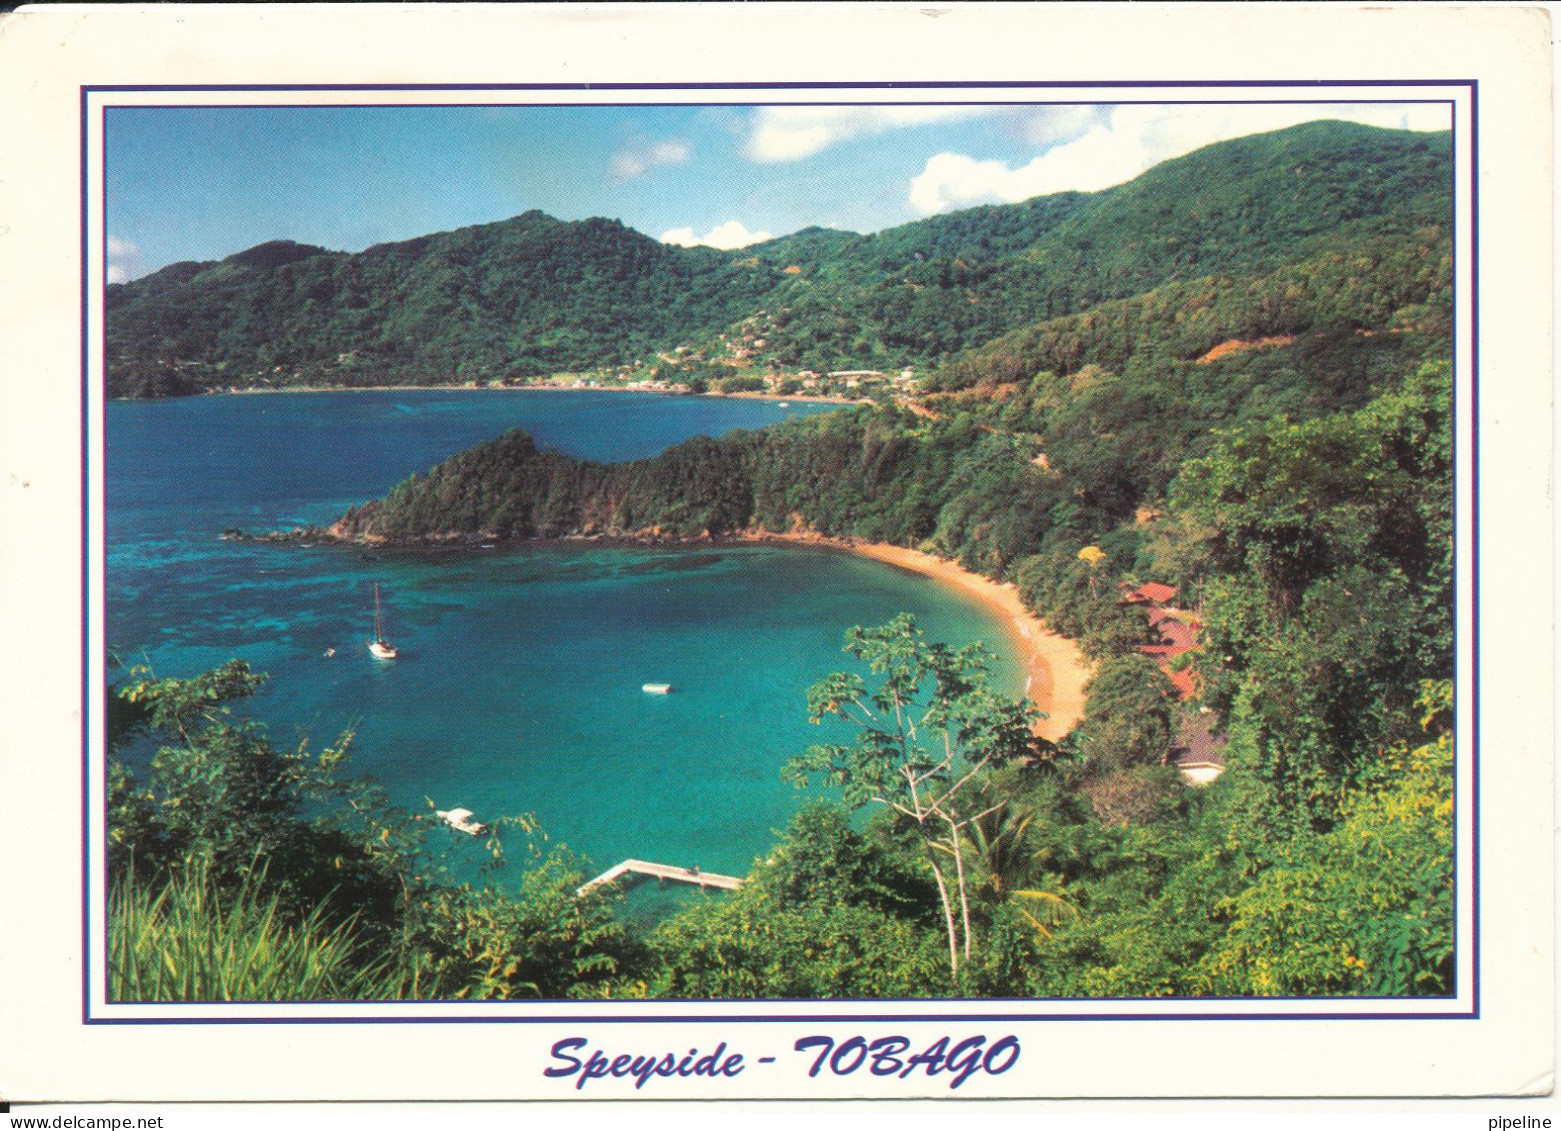 Trinidad Tobago Postcard Sent To Denmark 16-7-1999 (Speyside Tobago) - Trinidad